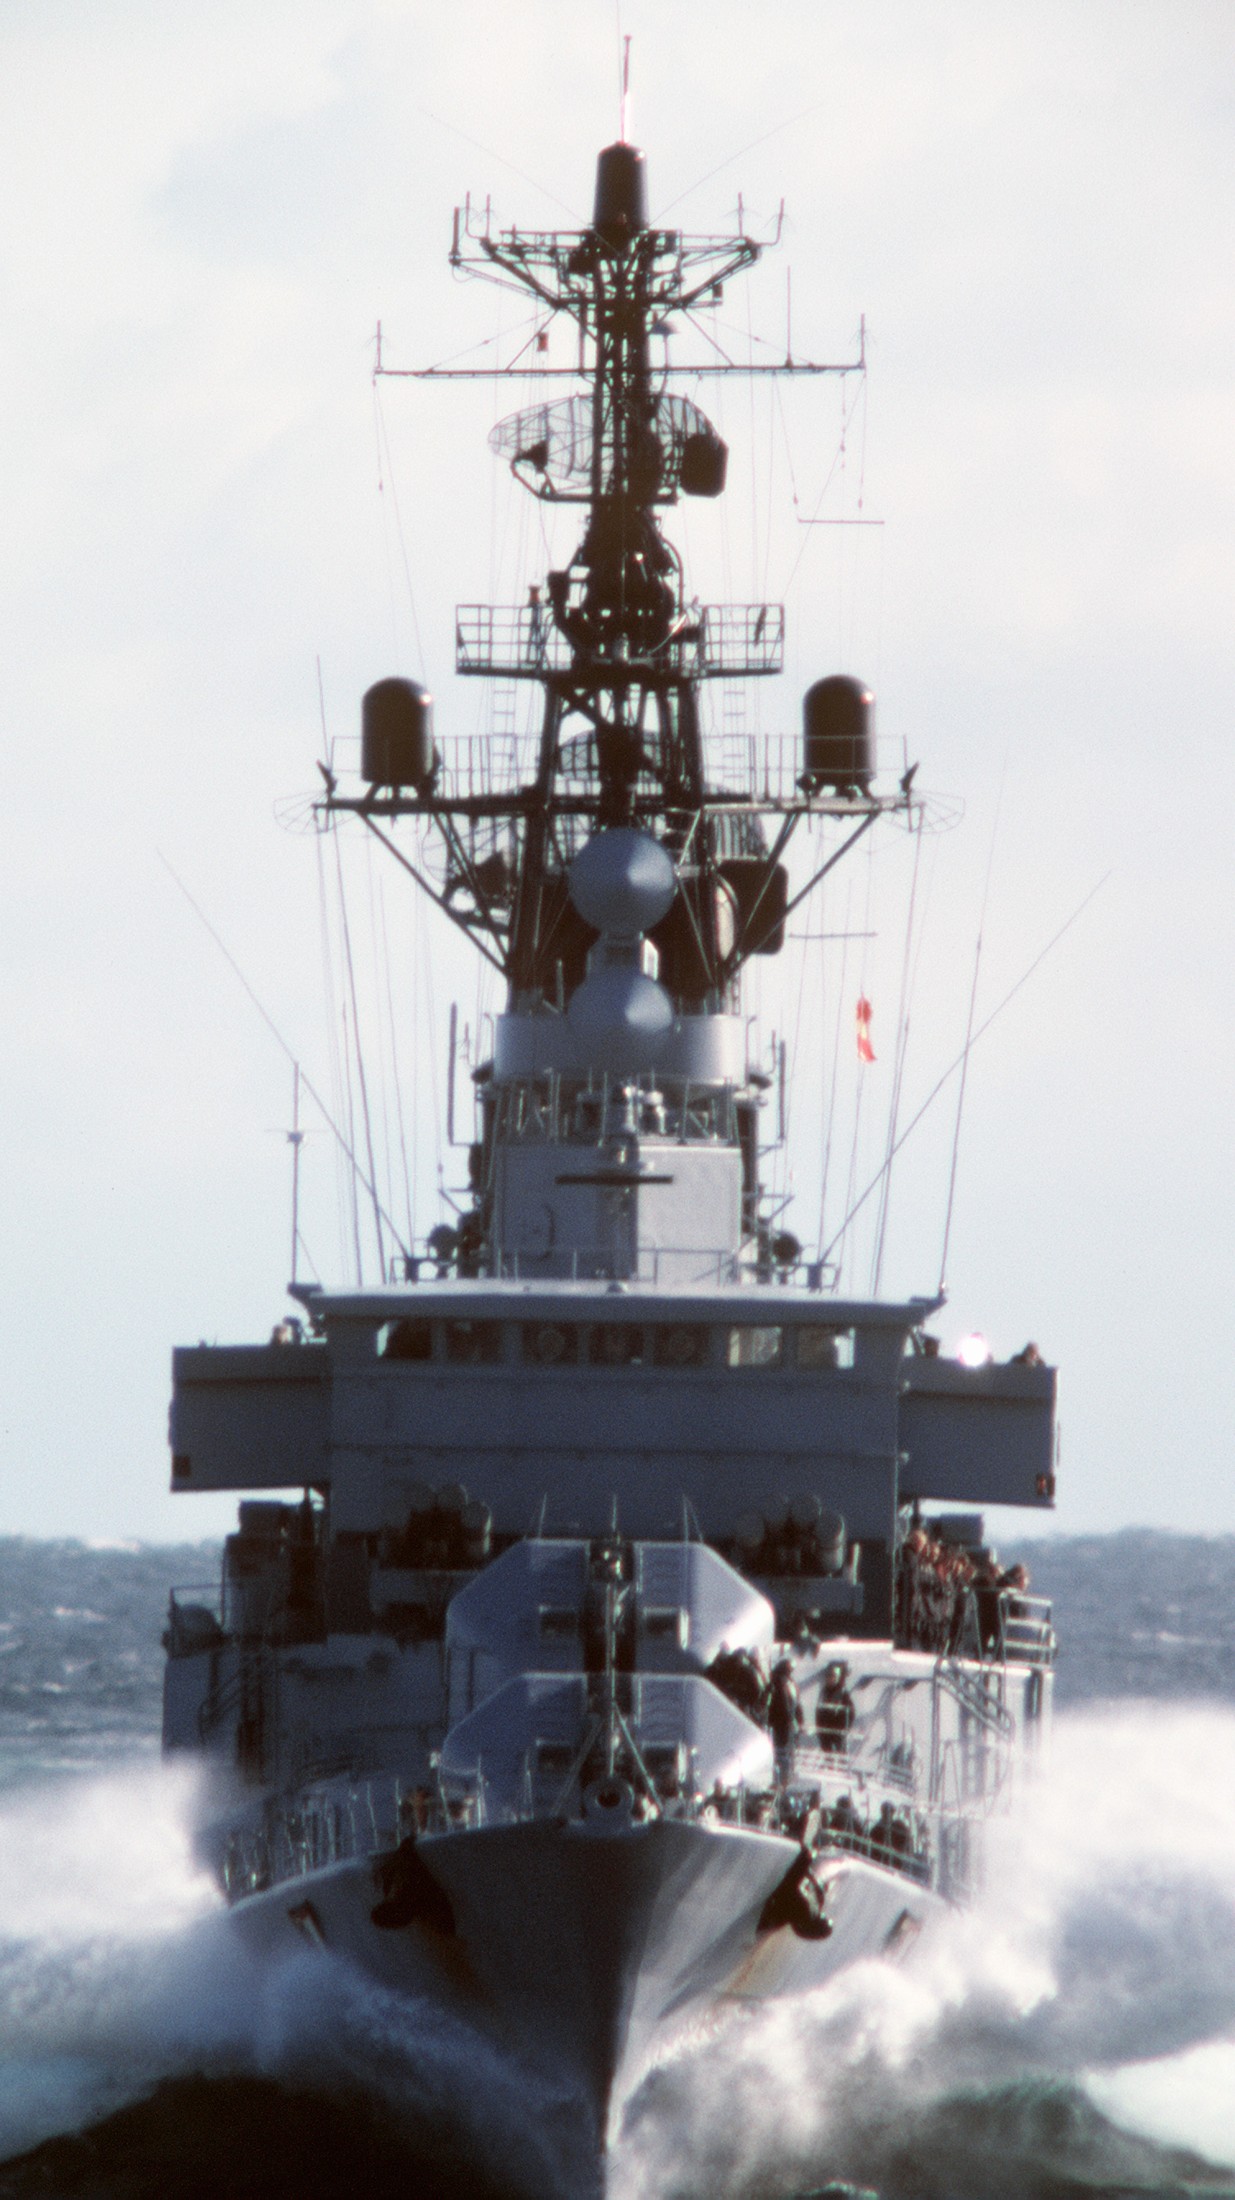 d-182 fgs schleswig-holstein type 101a hamburg class destroyer german navy 19